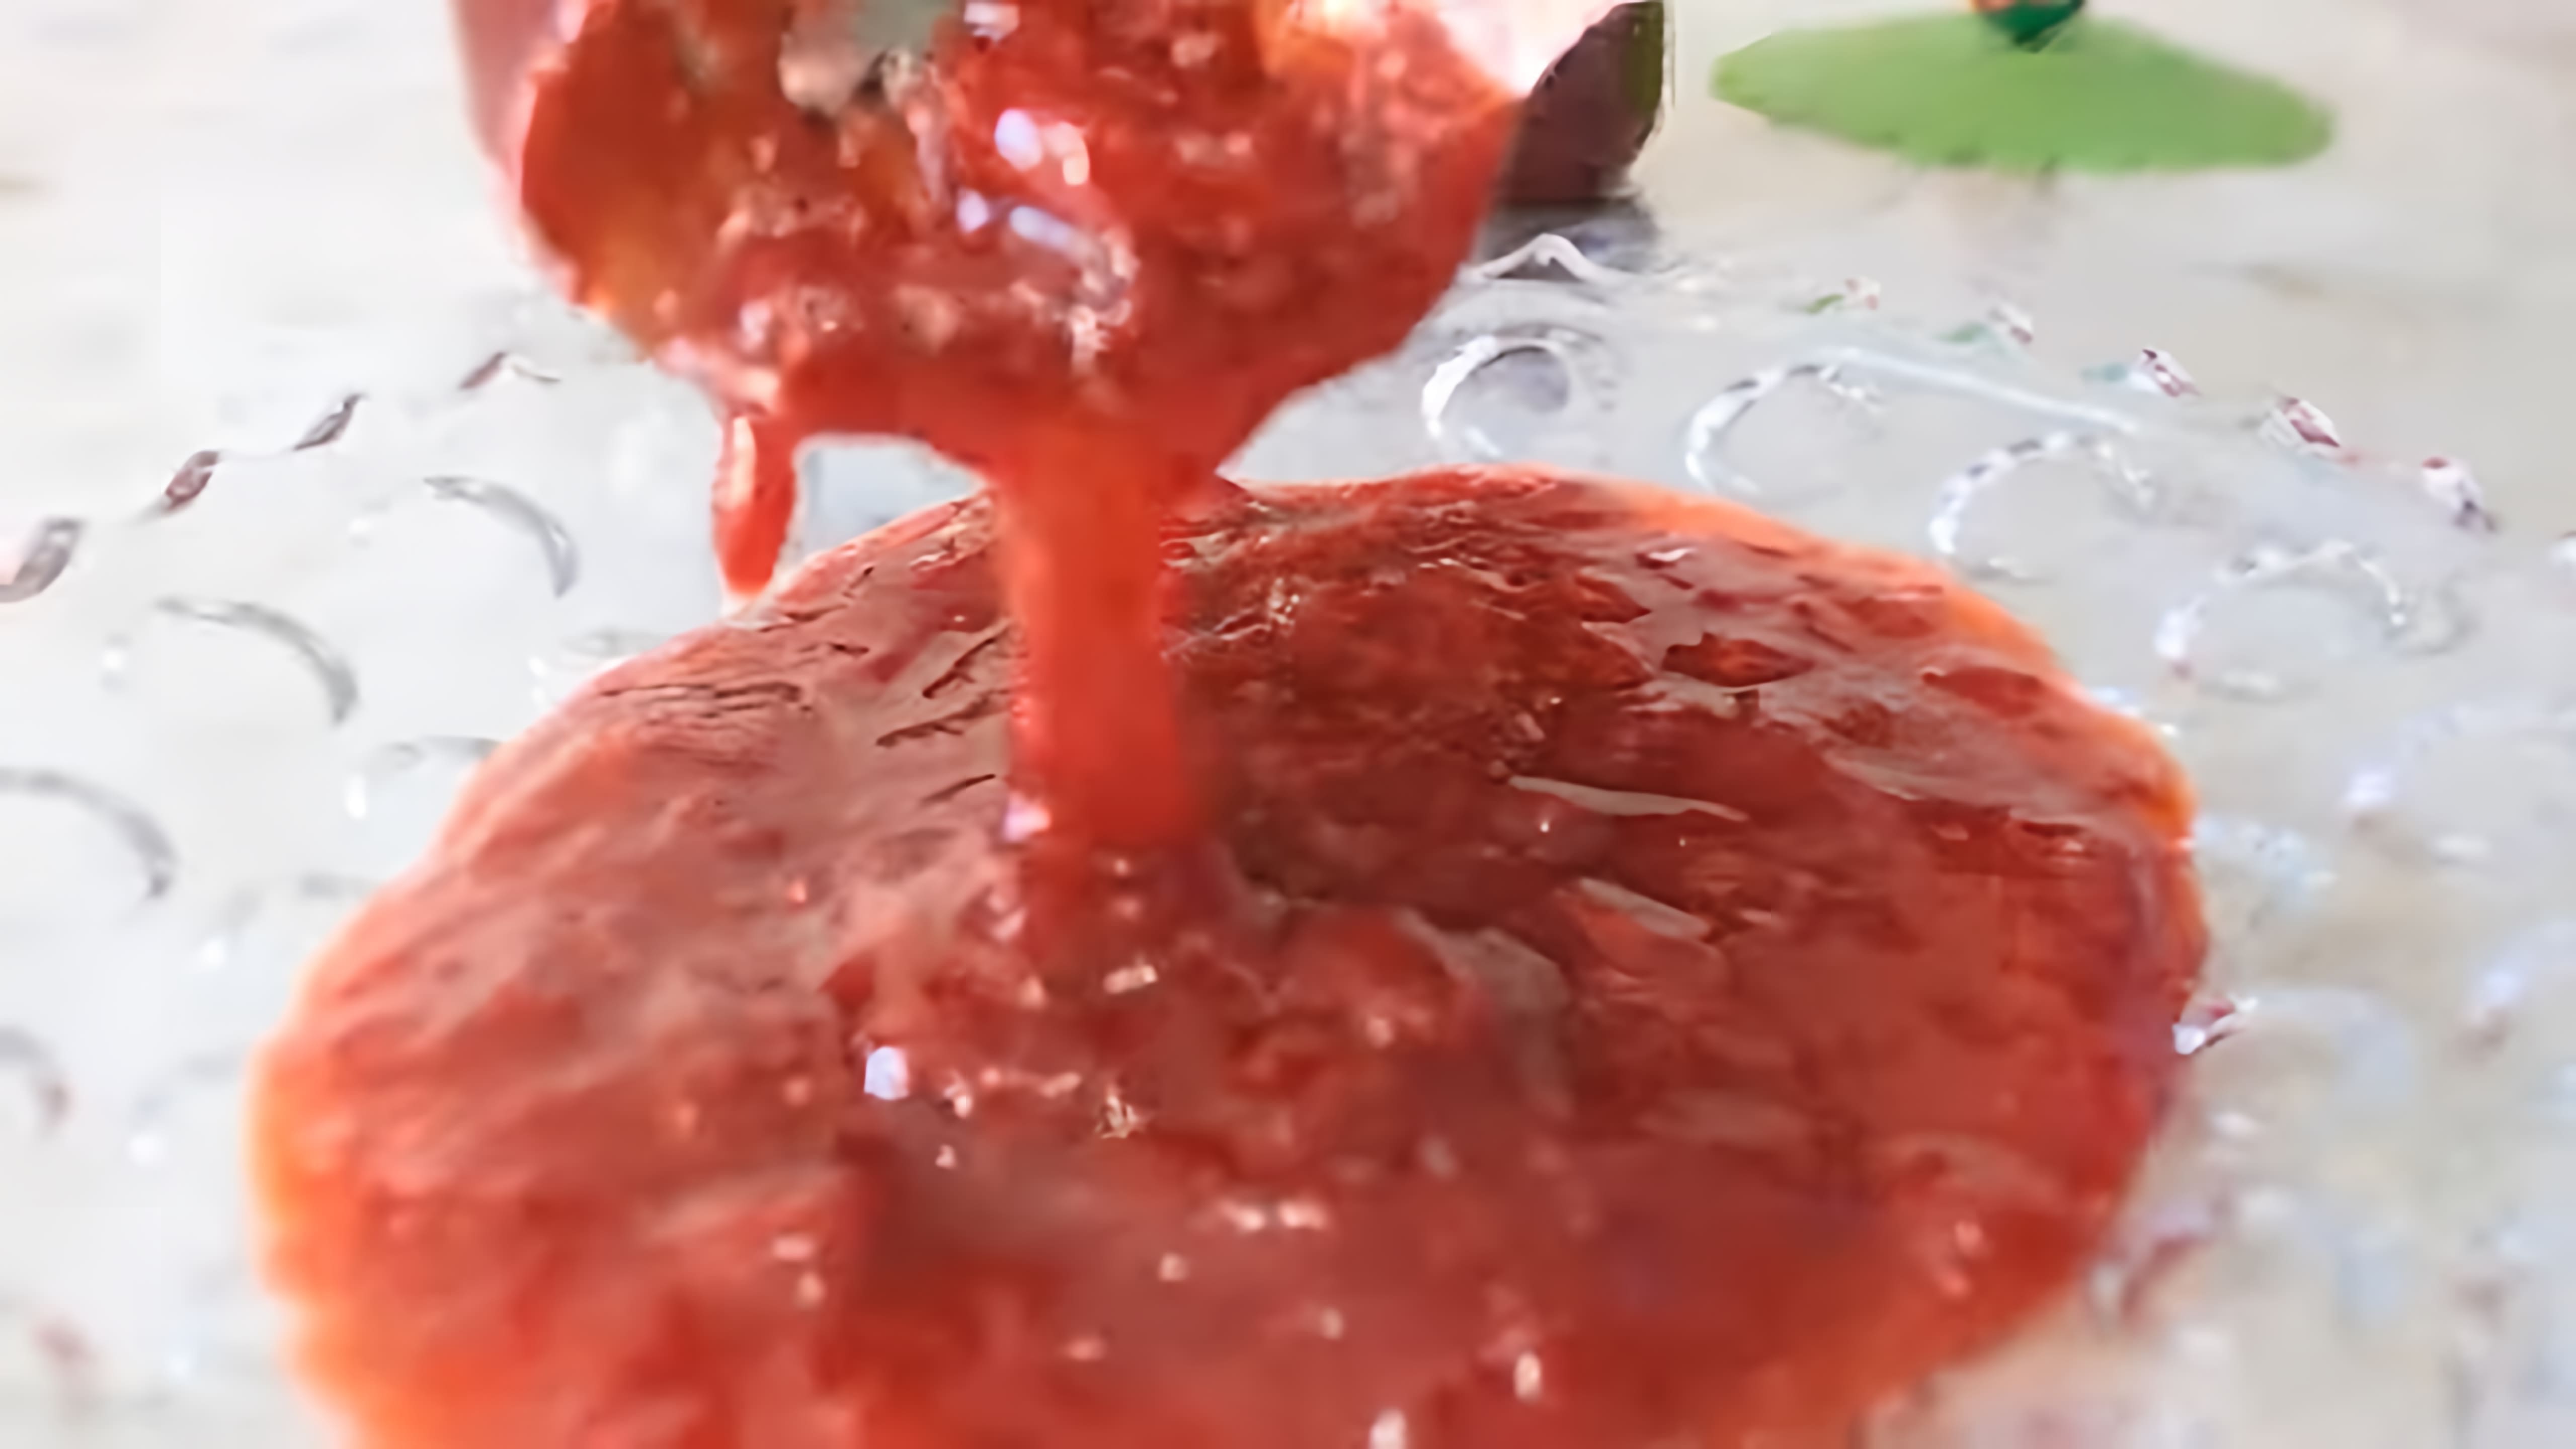 В этом видео демонстрируется процесс приготовления натурального клубничного джема без использования желатина и загустителей